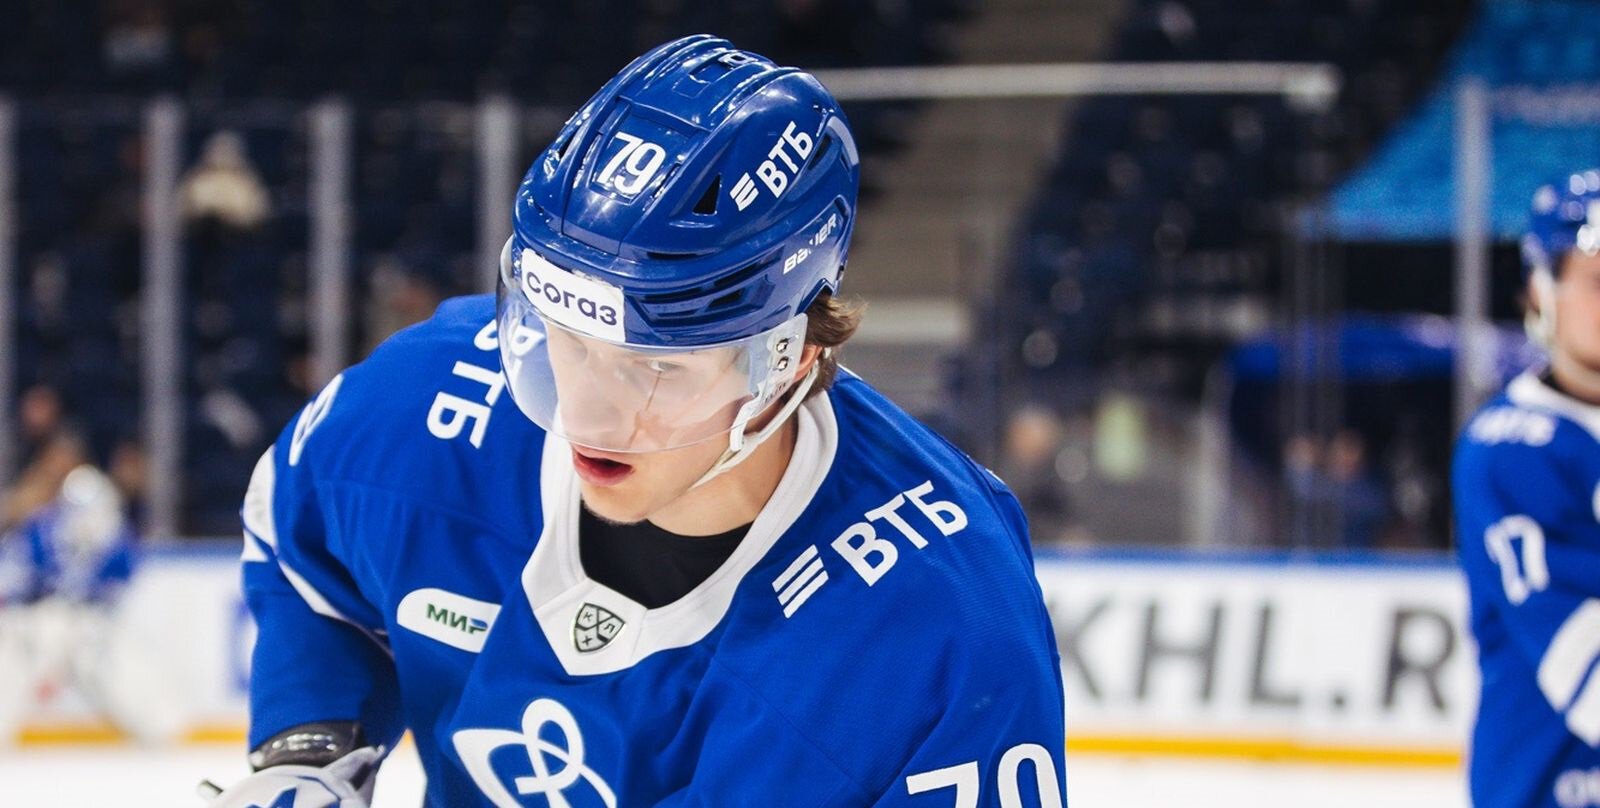 Форвард Динамо Никонов намерен продолжить карьеру в НХЛ. У него есть предложение от Сиэтла (Metaratings)